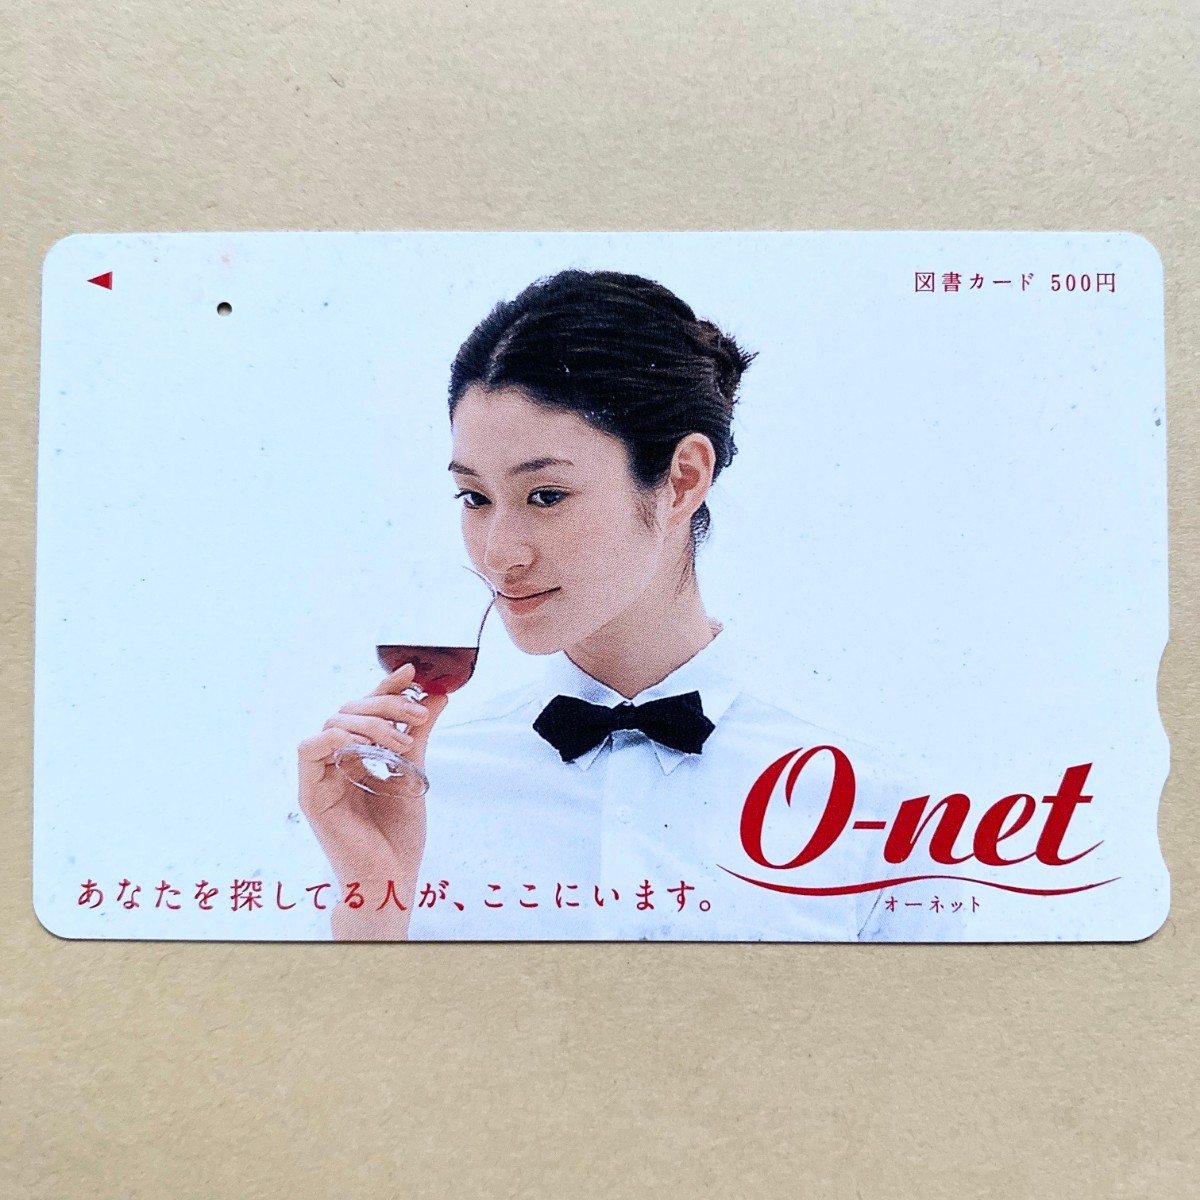 【使用済】 図書カード 小雪 O-net_画像1